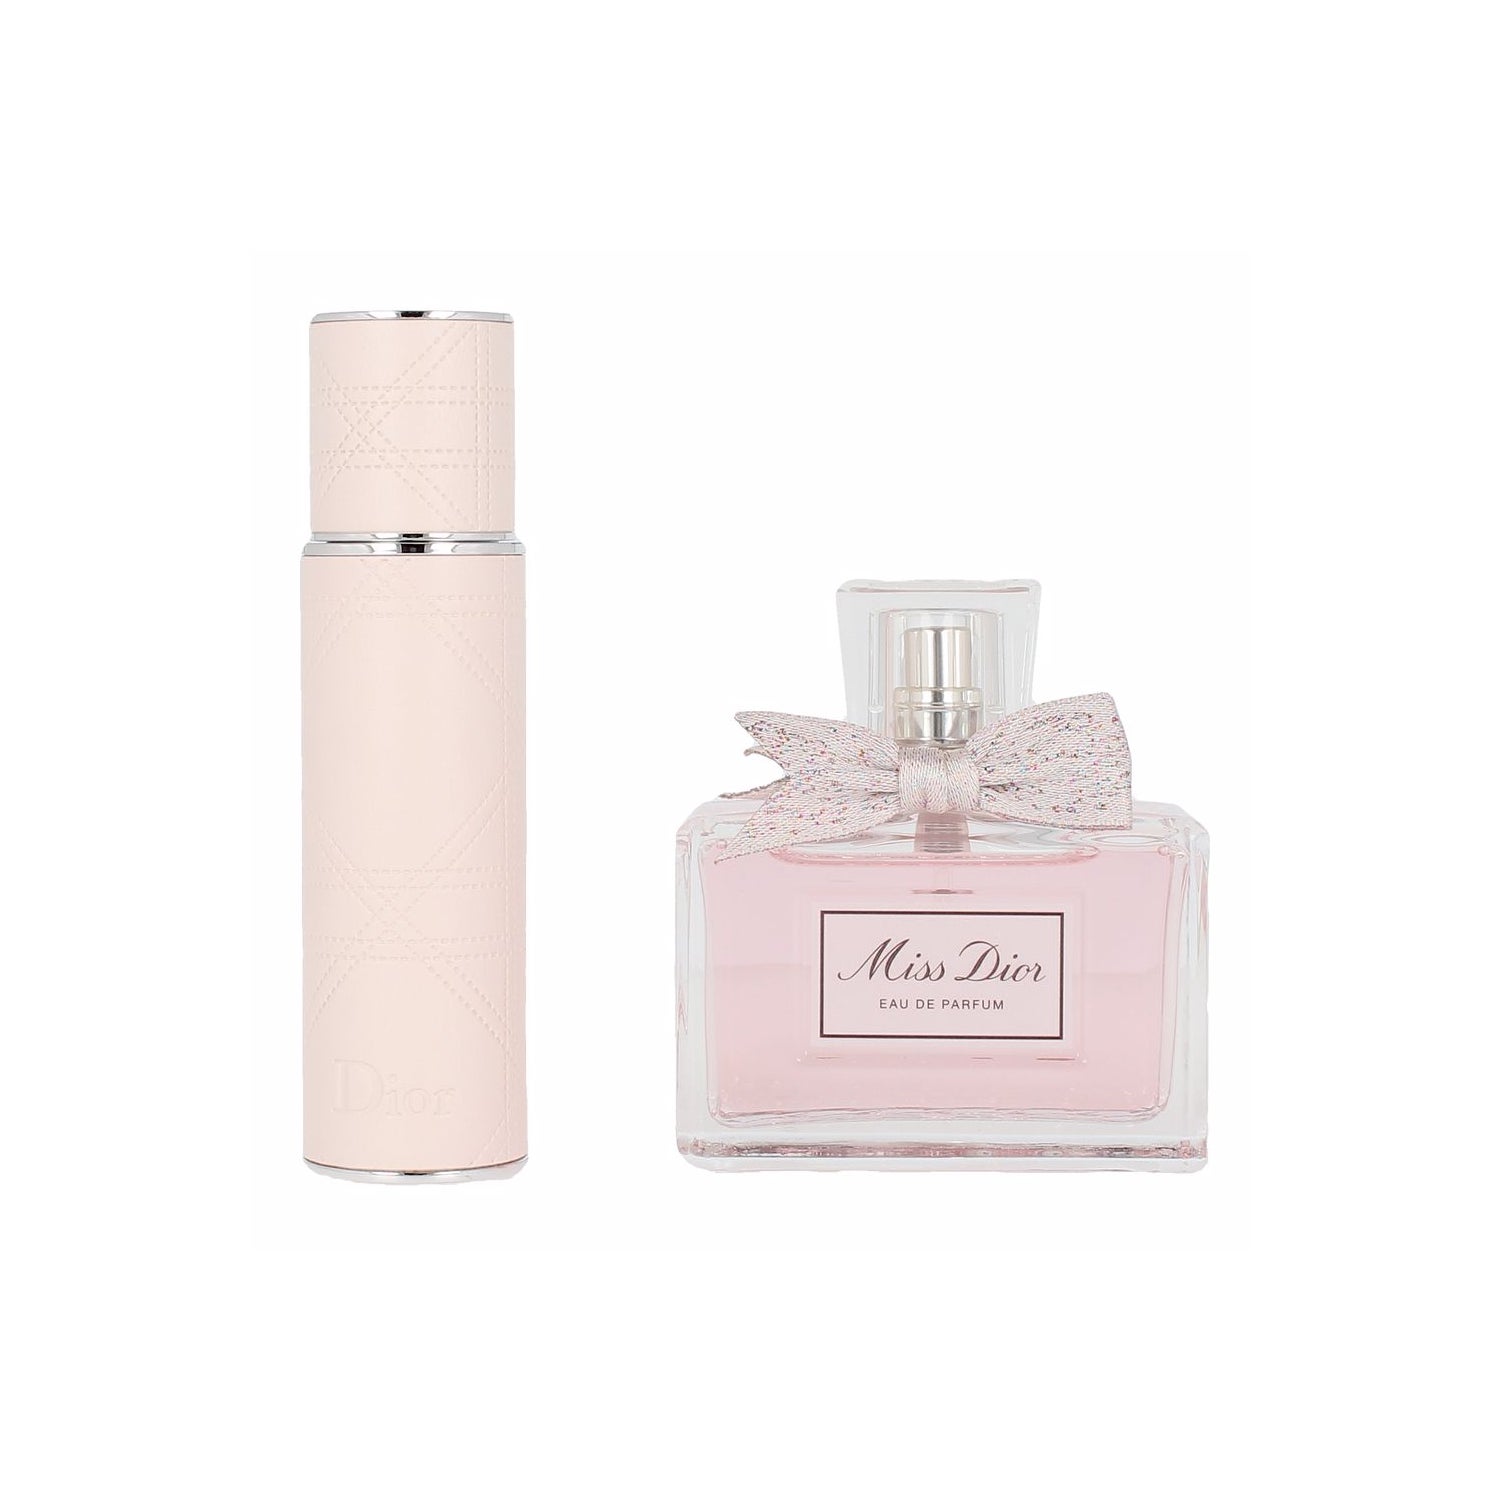 Vulx Perfumaria - Decant - PERFUME FEMININO MISS DIOR EAU DE TOILETTE 10ml